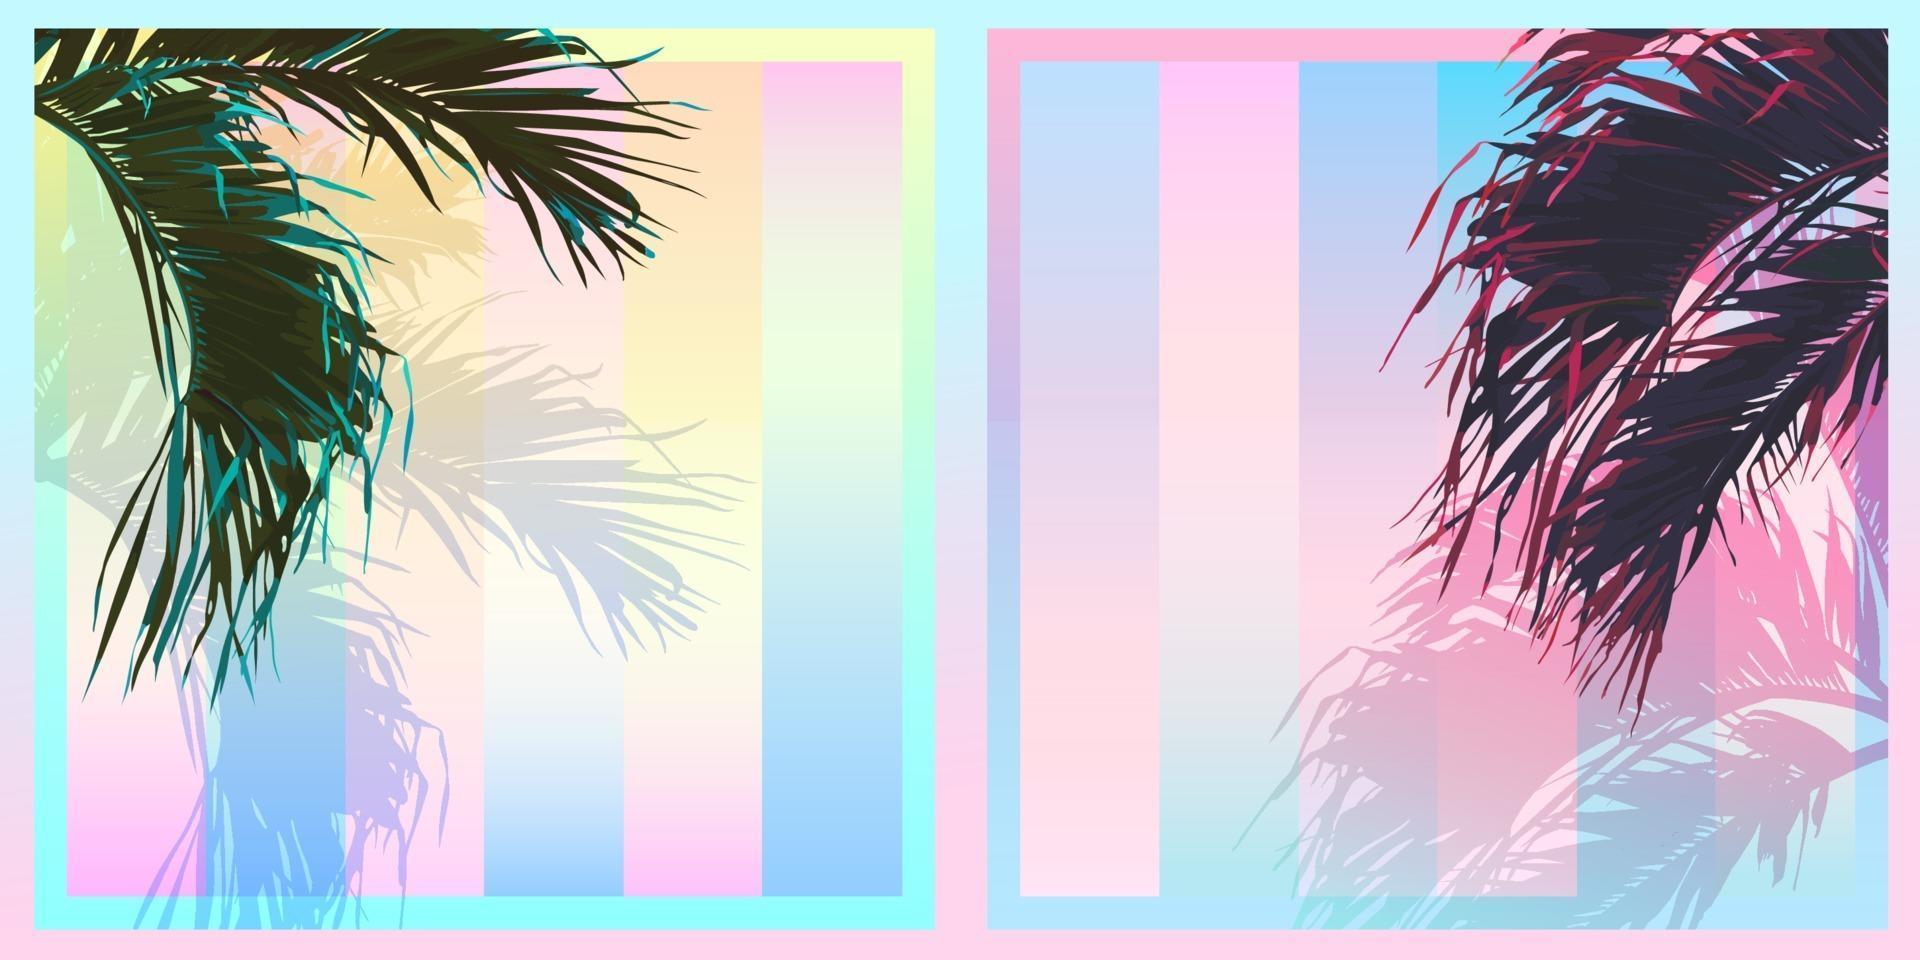 Feuille de cocotier de palmier tropical exotique, palette de couleurs dégradé pastel saturation douce, nostalgique vintage rétro vecteur